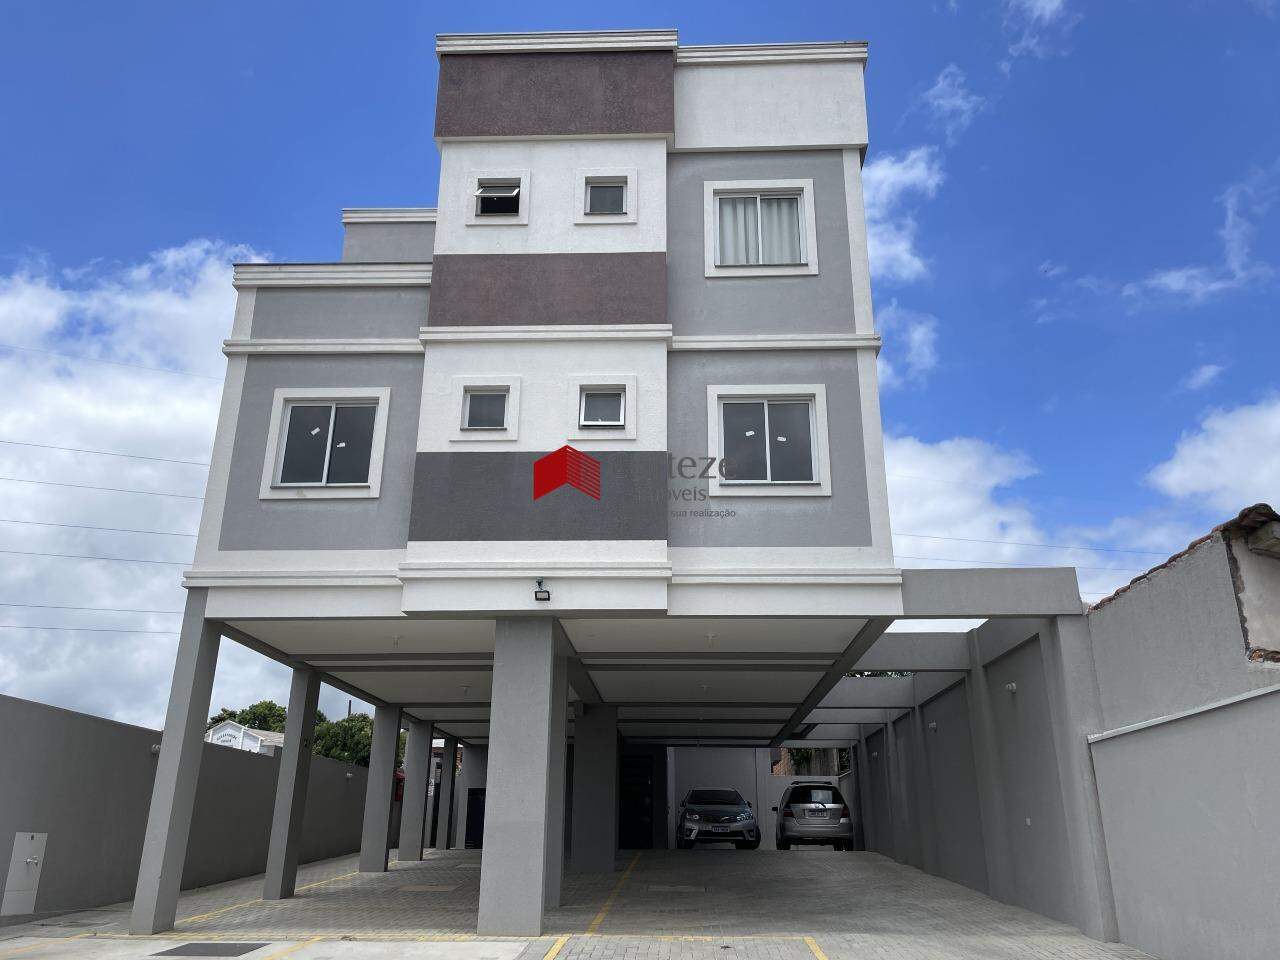 Apartamento novo de 3 quartos sendo 1 suíte, ótima localização no bairro Colônia Rio Grande.